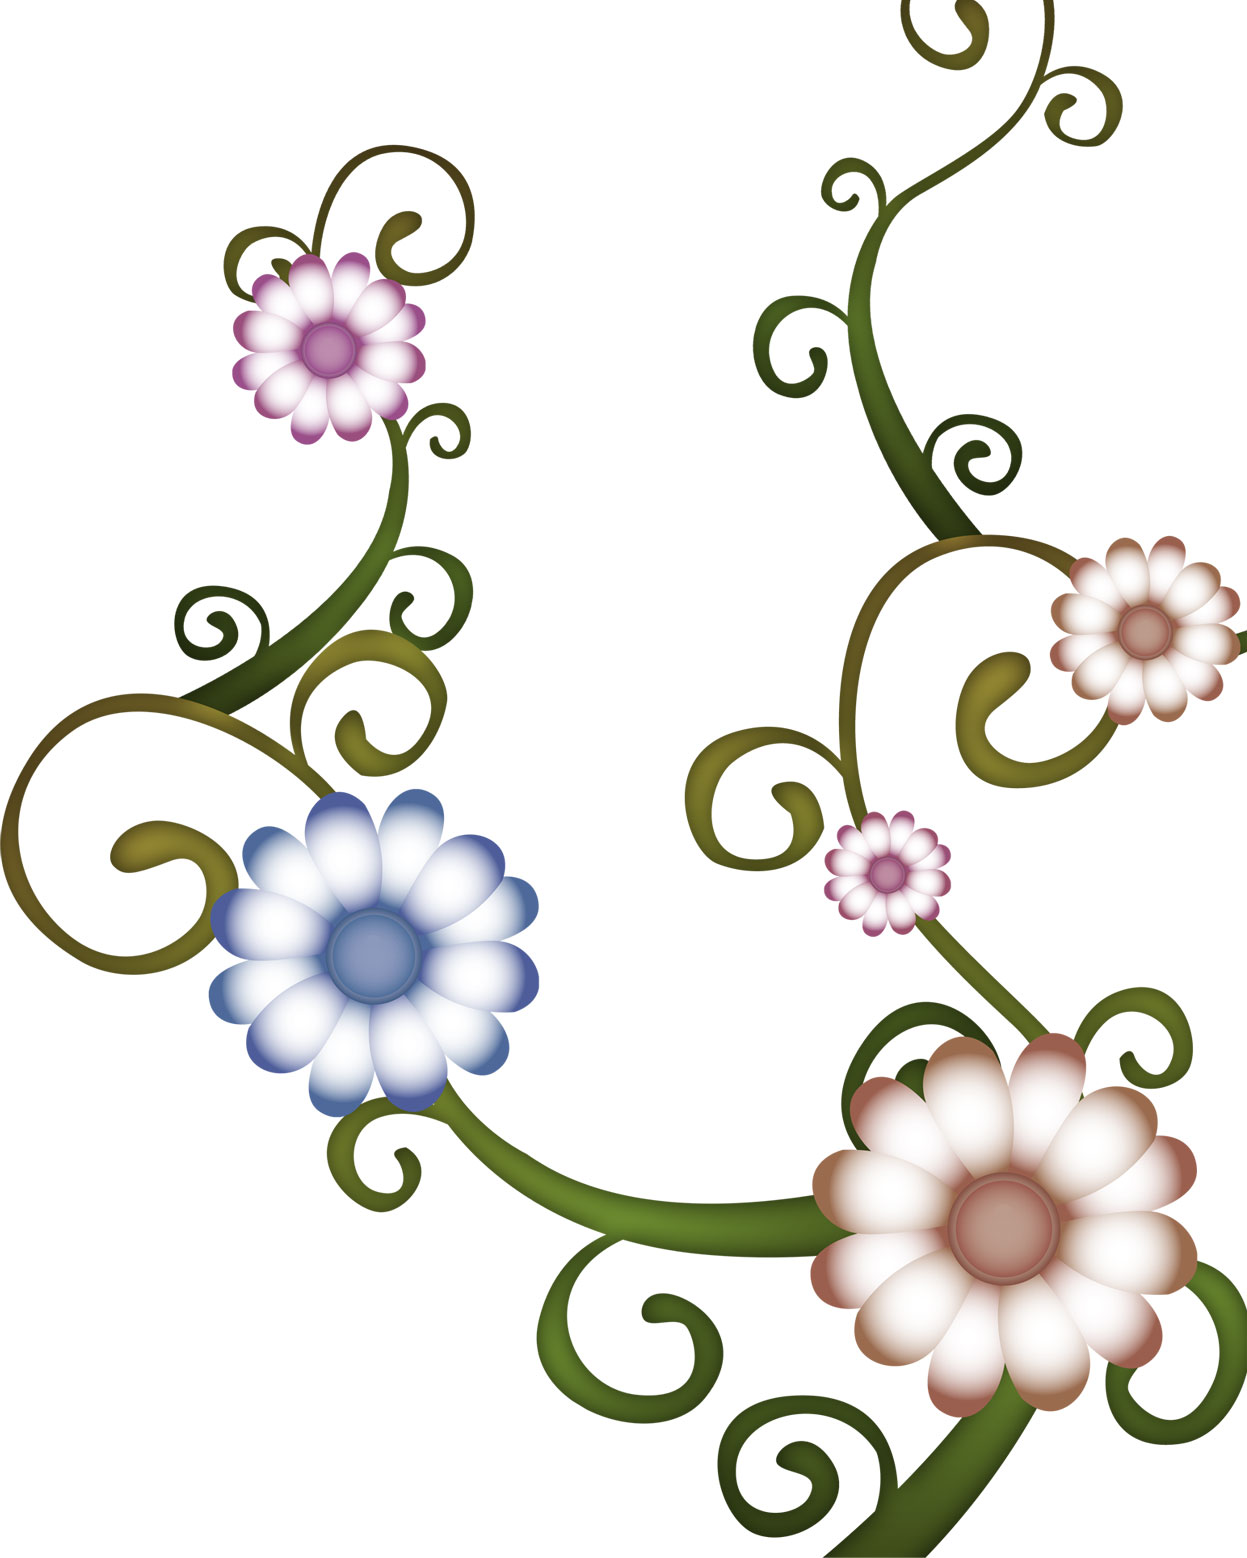 ポップでかわいい花のイラスト フリー素材 No 345 蔦 青 紫